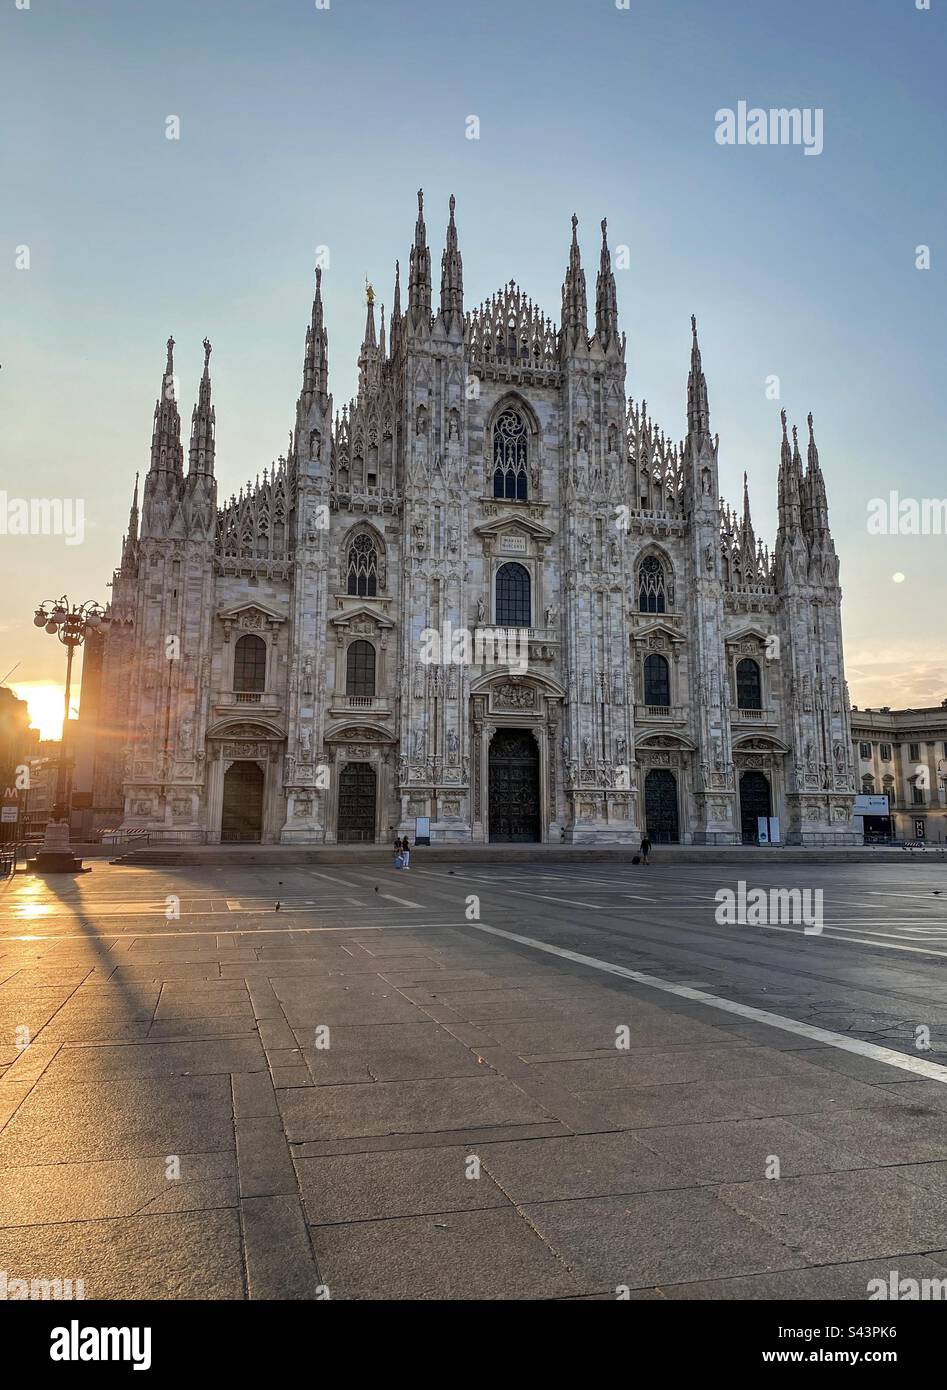 Duomo di Milano au lever du soleil. Cathédrale de Milan, Italie. Banque D'Images